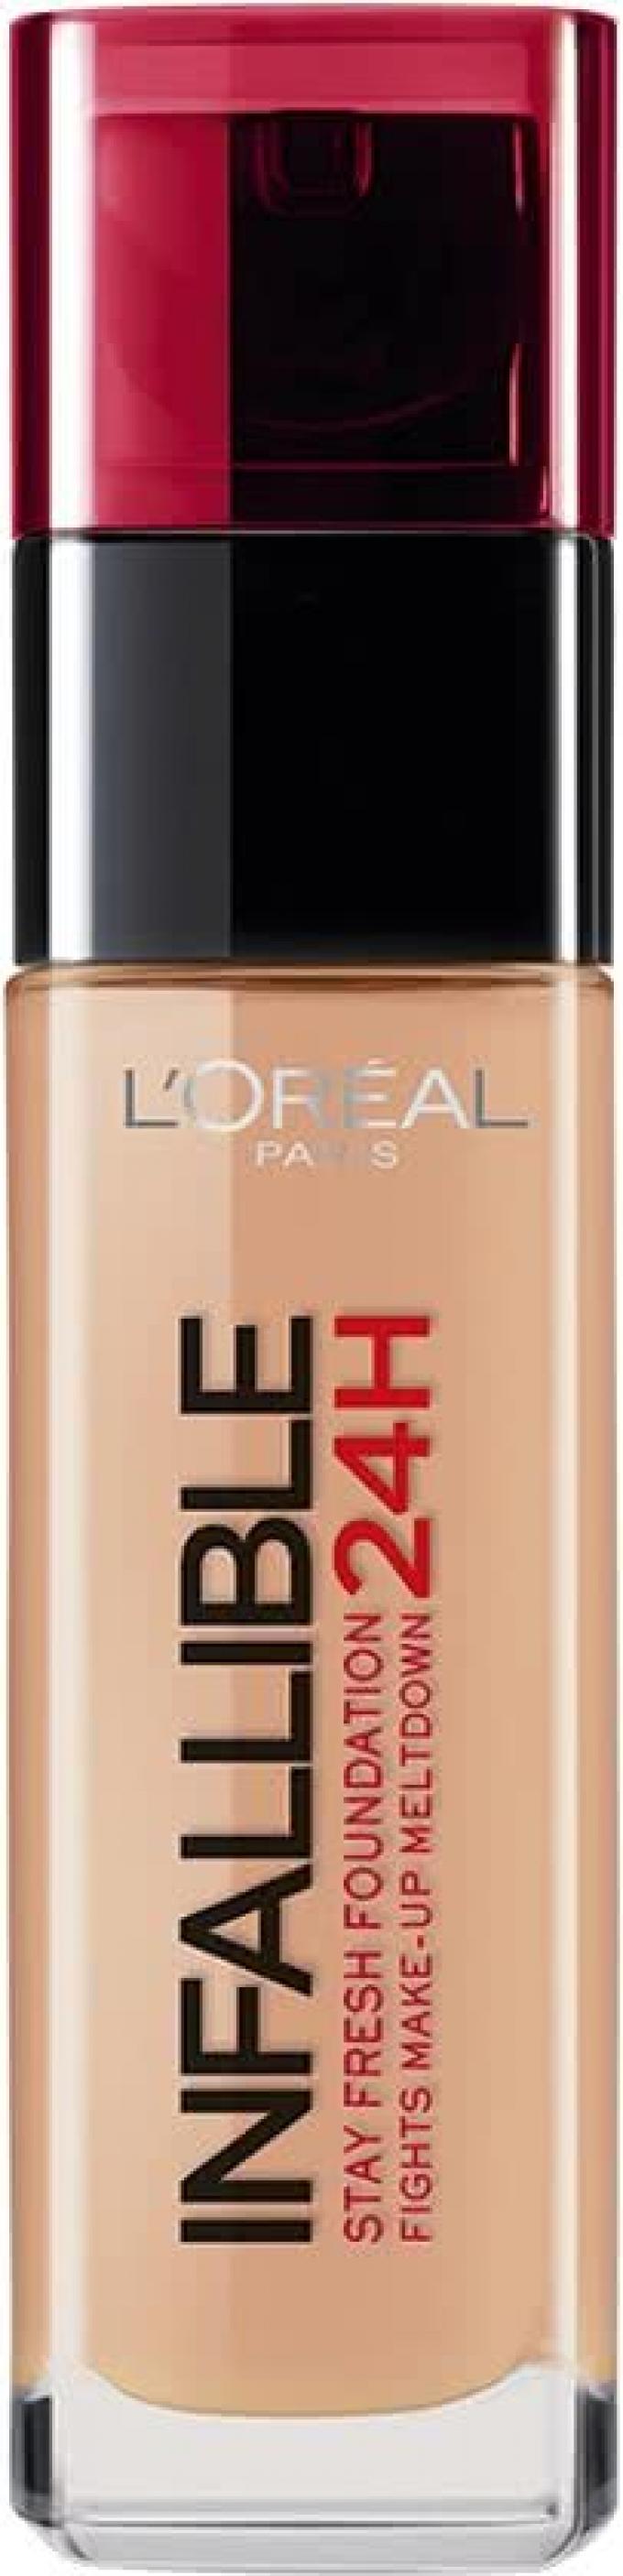 L'Oréal - Infallible 24 H foundation